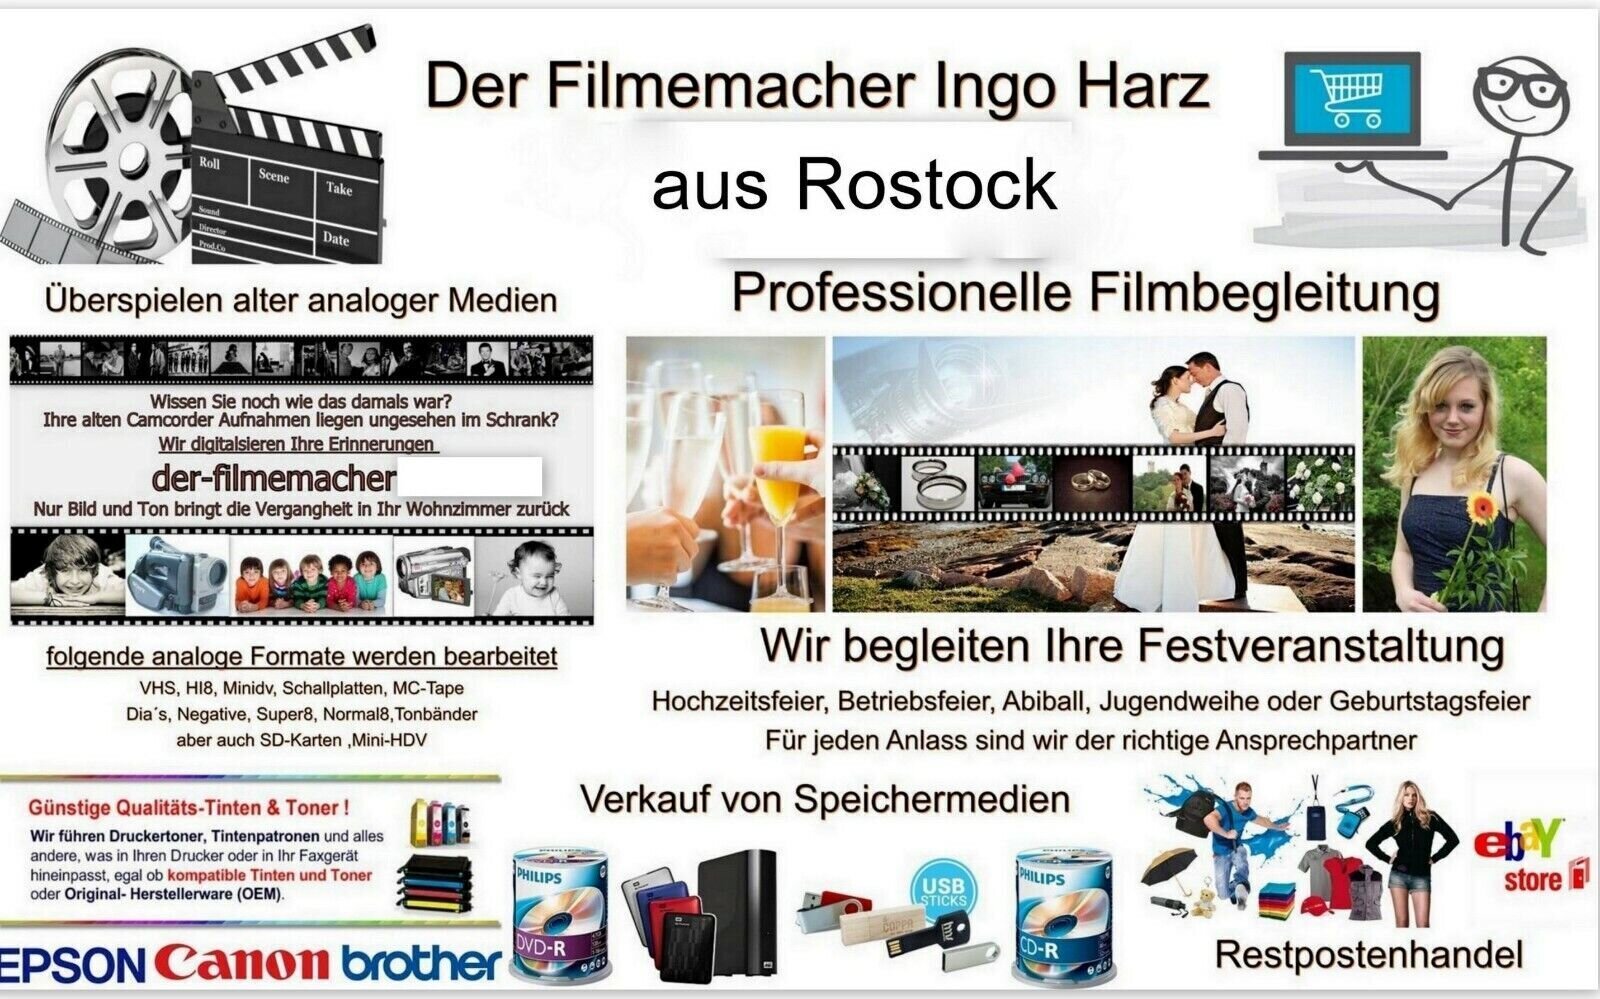 Der Filmemacher, Dierkower Damm 38D in Rostock